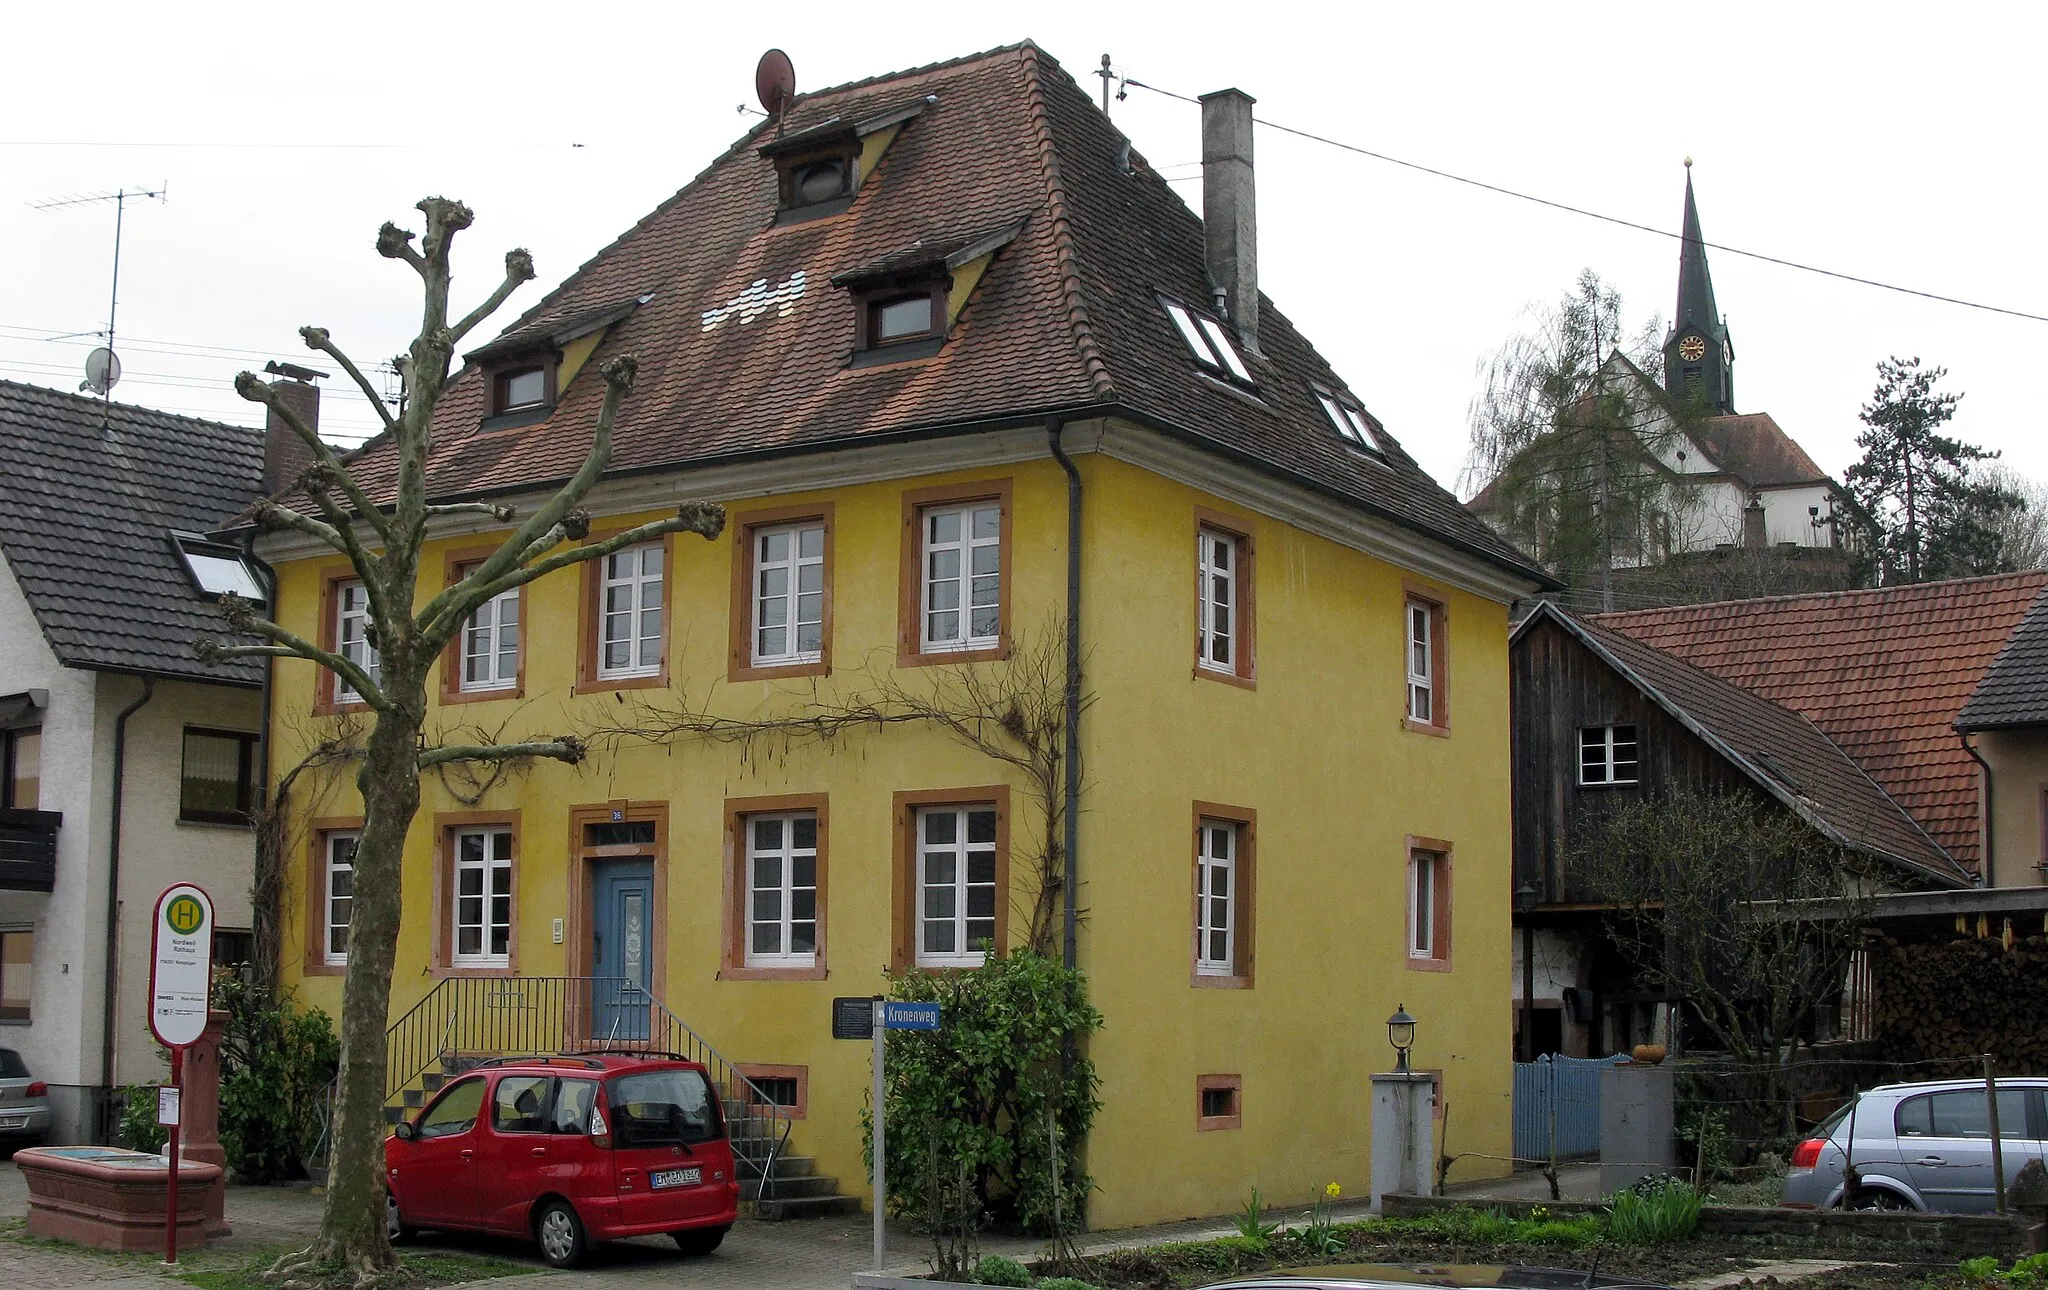 Photo showing: ehemaliges Gasthaus Krone in Nordweil, im Hintergrund die kath. Kirche St. Barbara